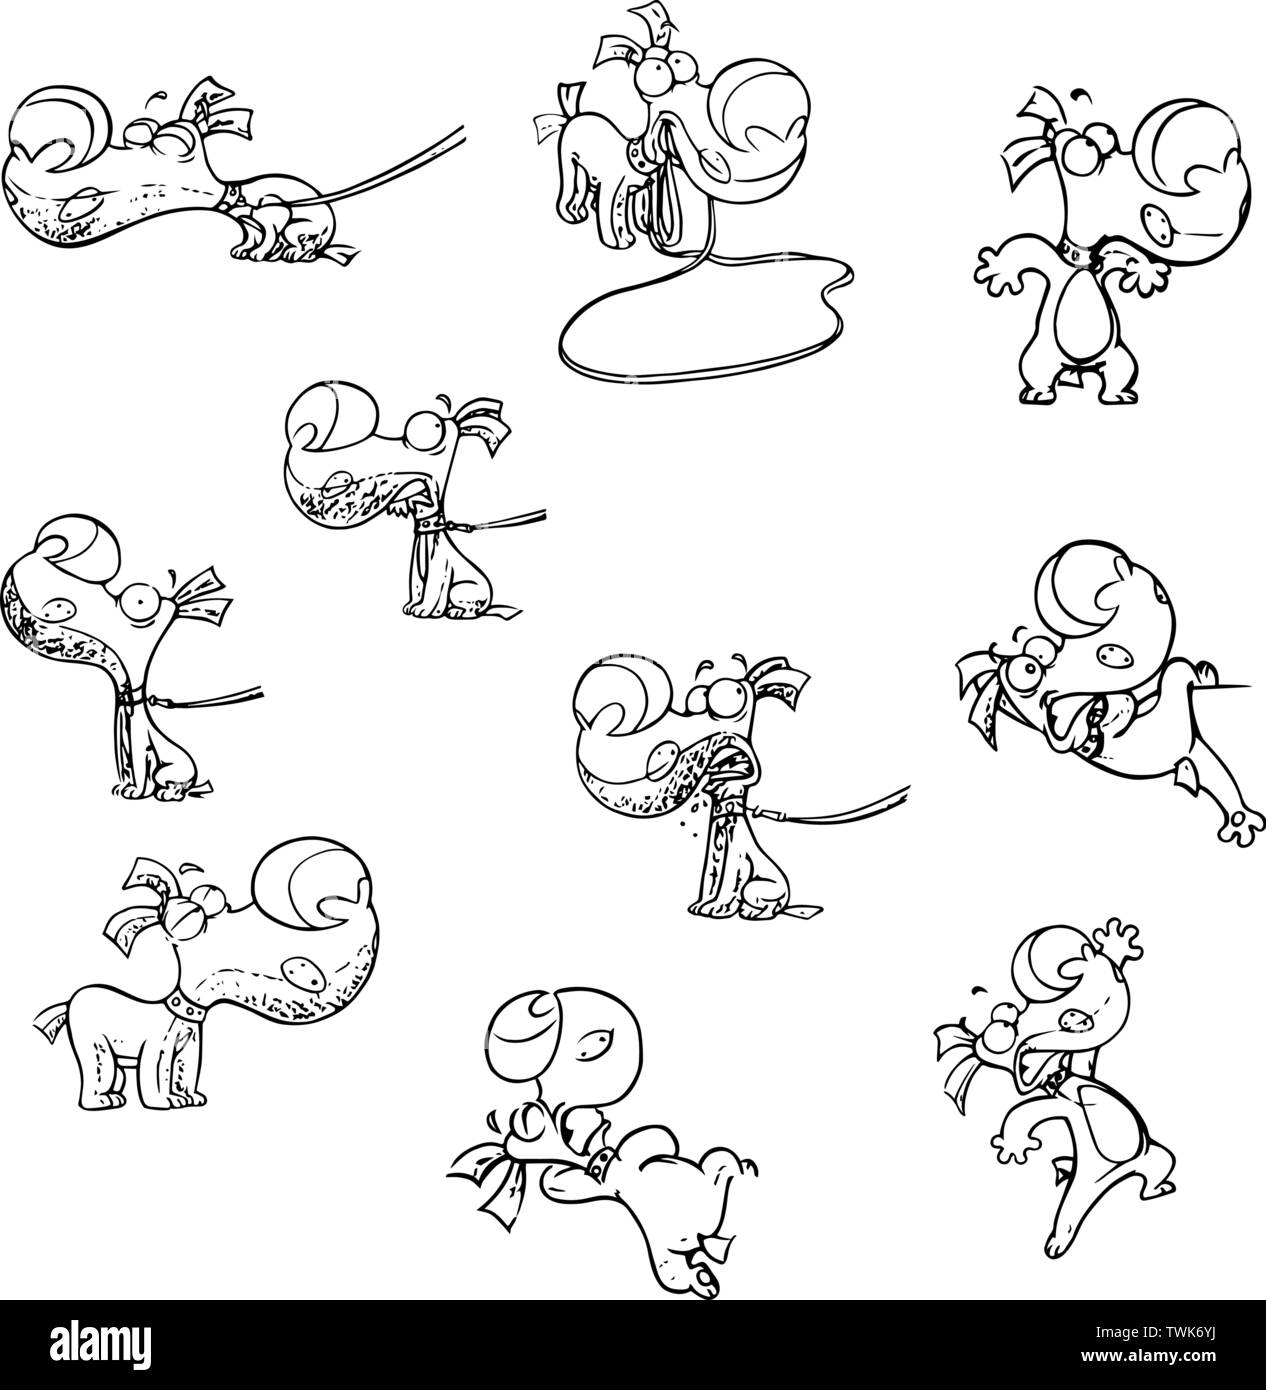 Serie di illustrazioni vettoriali con un simpatico cartoon cucciolo con emozioni diverse e in pose diverse. L'illustrazione del cane è realizzato in una unità organizzativa nero Illustrazione Vettoriale